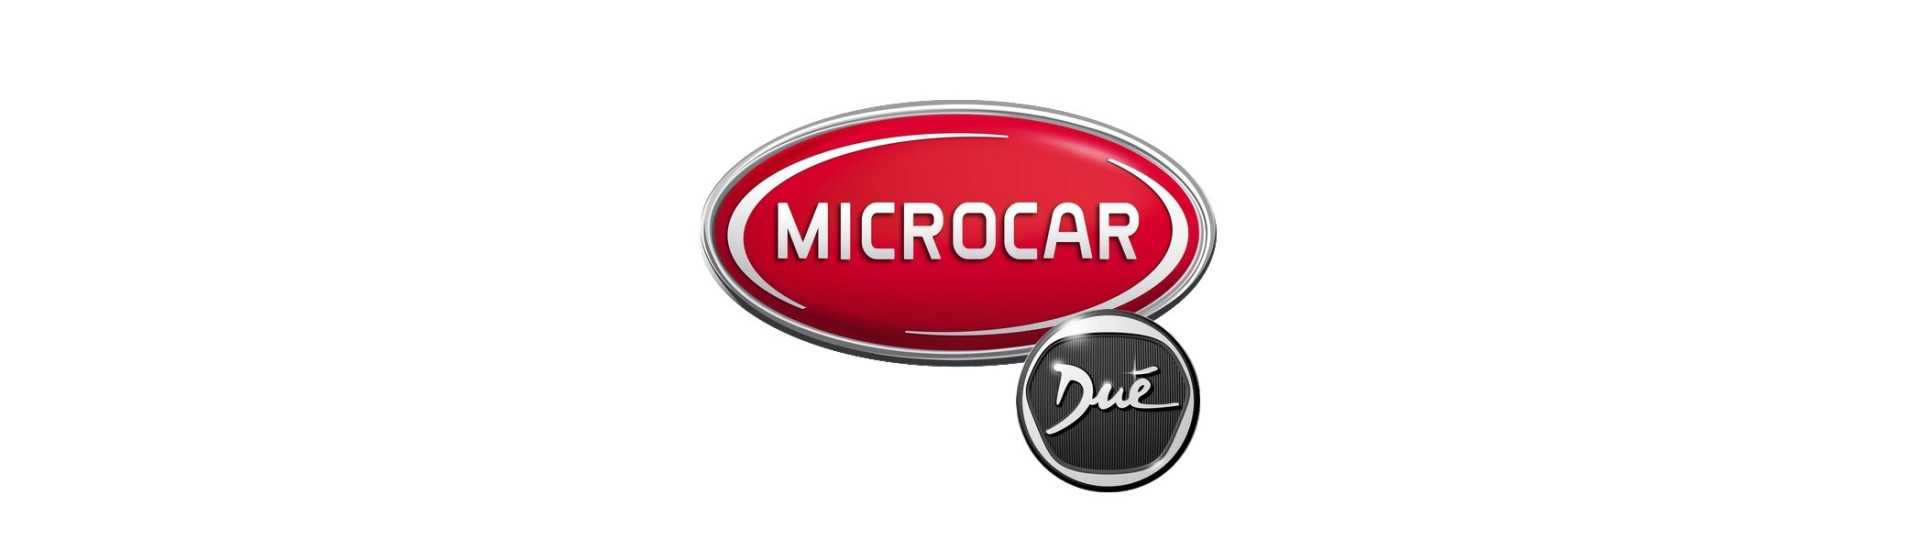 Paquete de rueda al mejor precio para coche sin licencia Microcar Dué